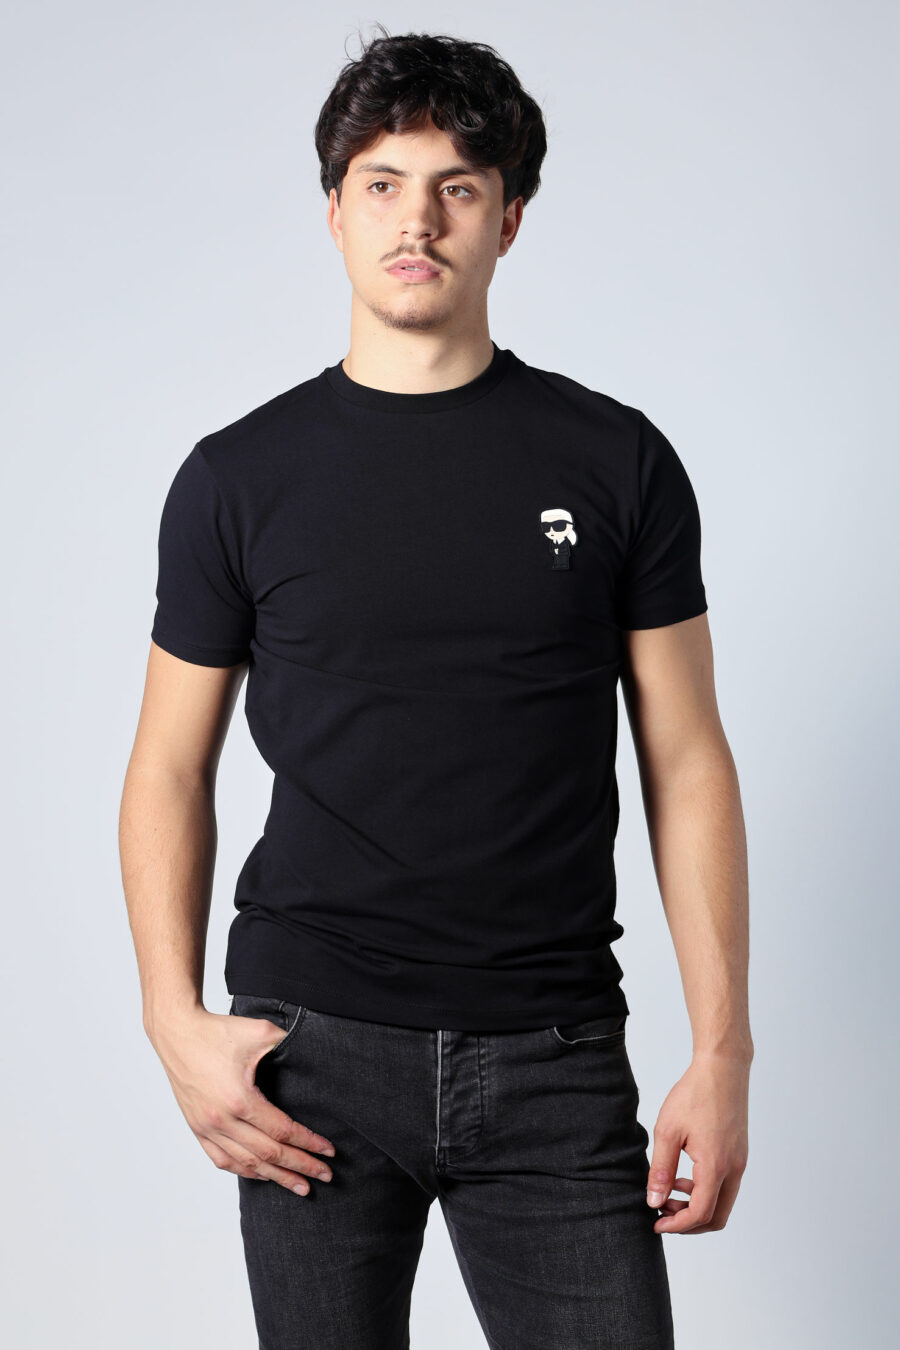 Black T-shirt with logo "ikonik" - Untitled Catalog 05720